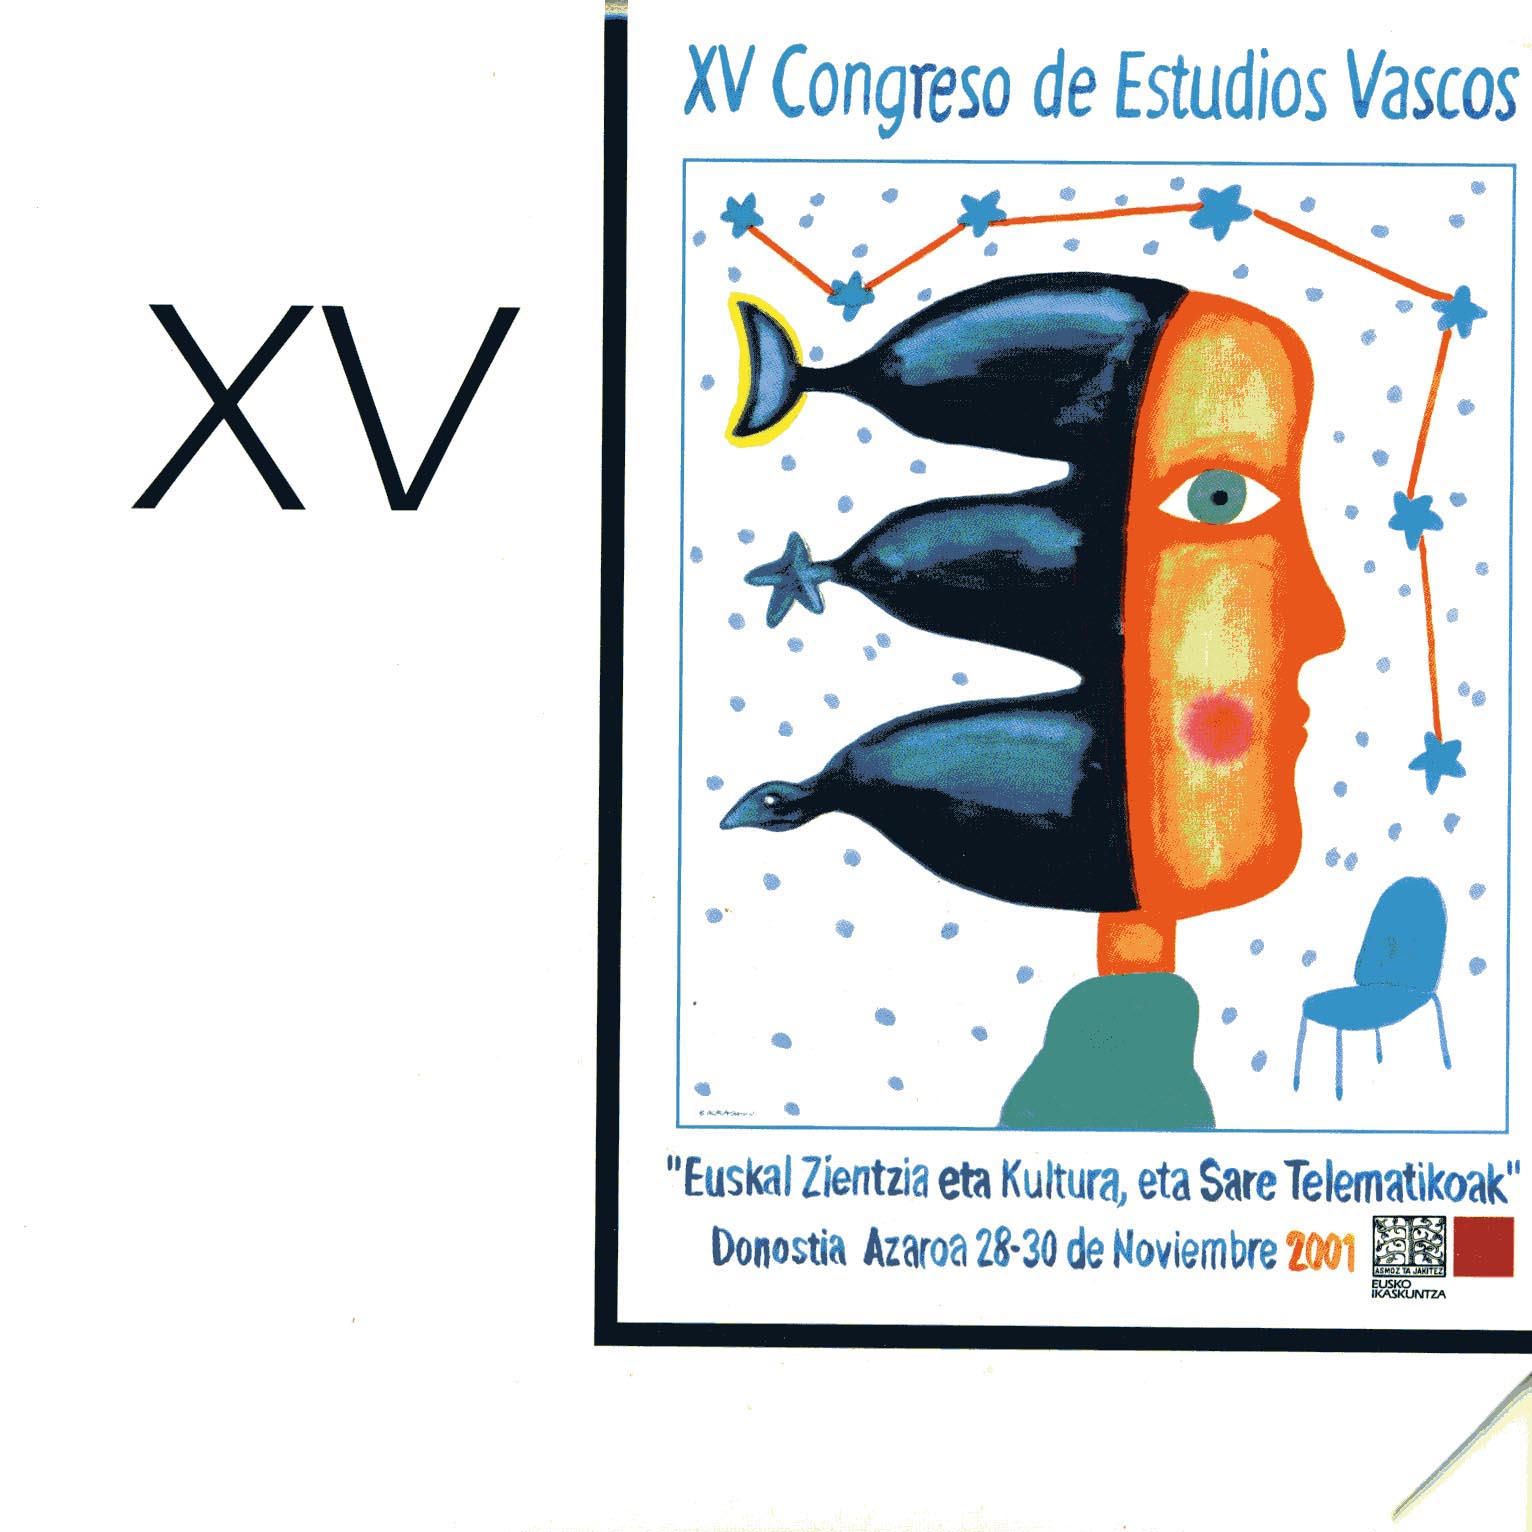 Congresos de Estudios Vascos